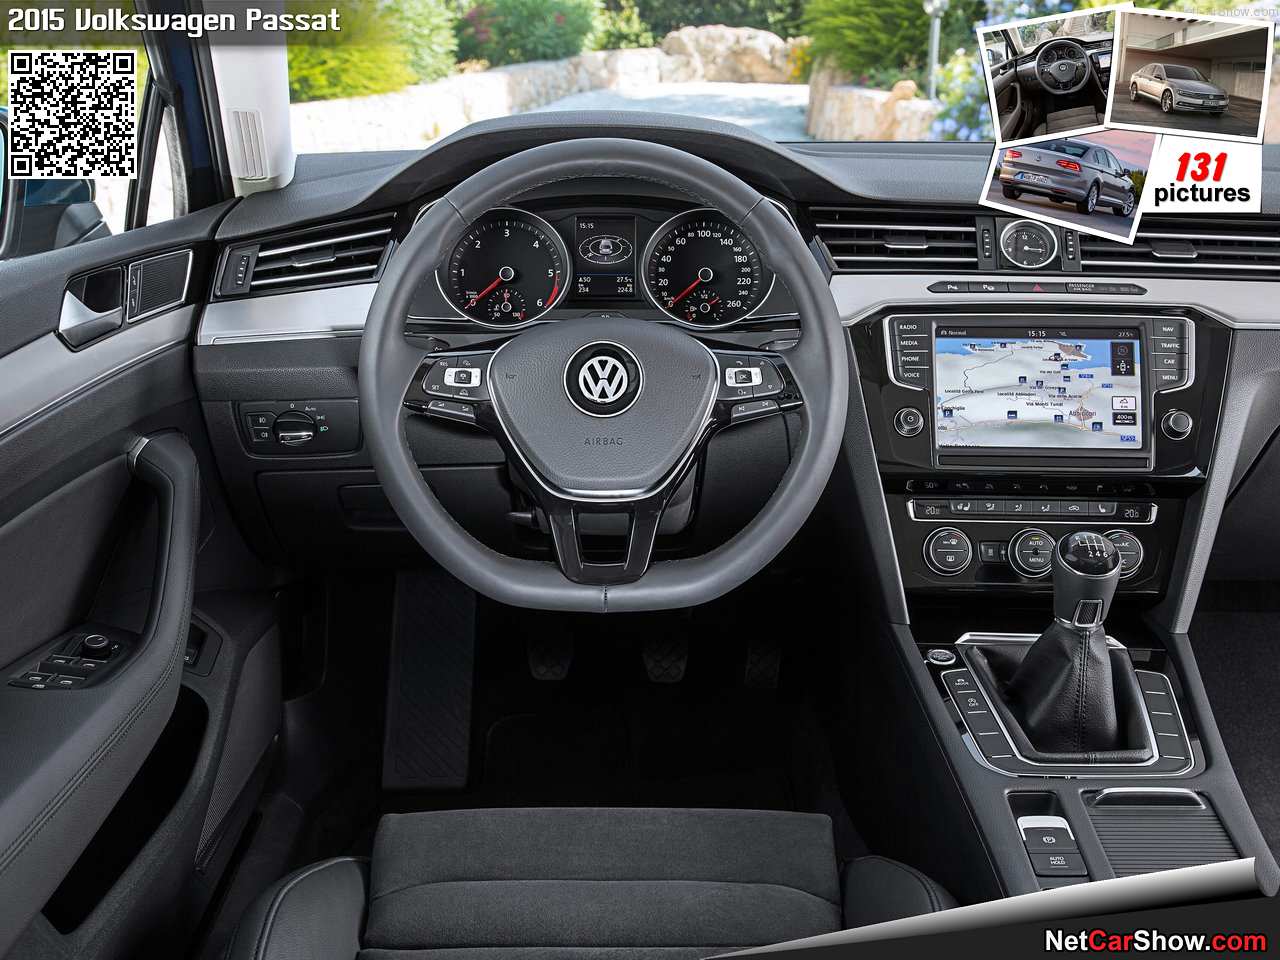 Volkswagen-Passat-2015-1280-2d.jpg